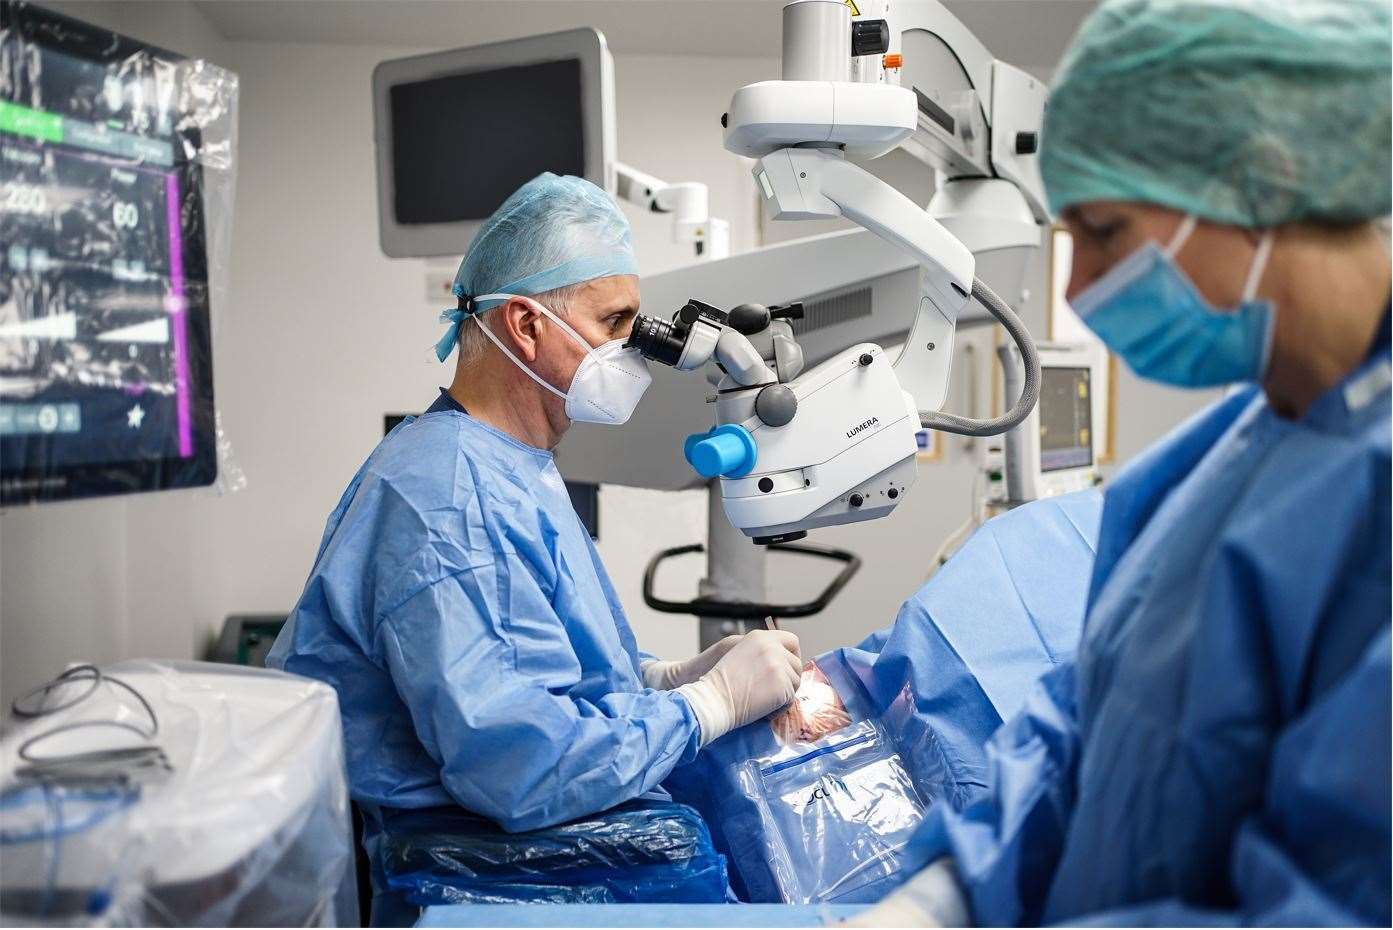 Optical Express ophthalmic surgeon David Teenan at work.